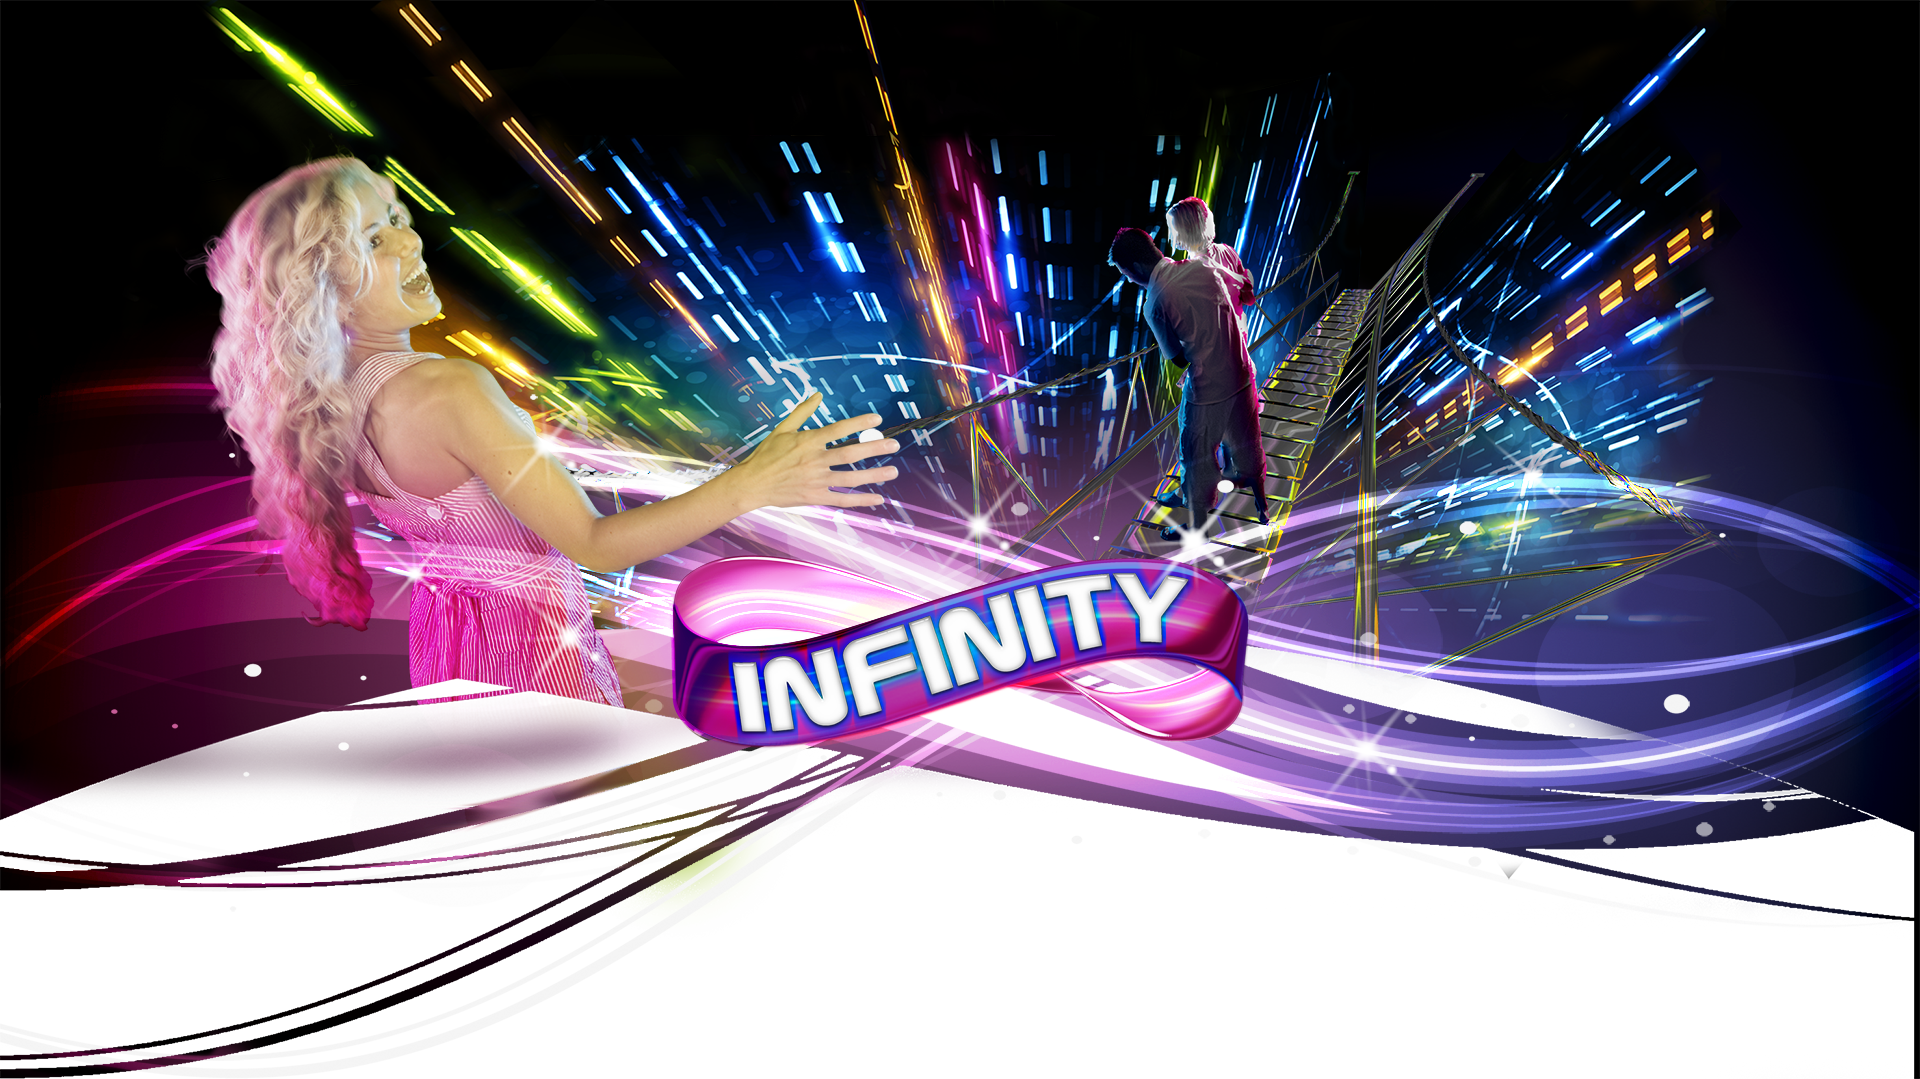 explore infinity | Infinity GC